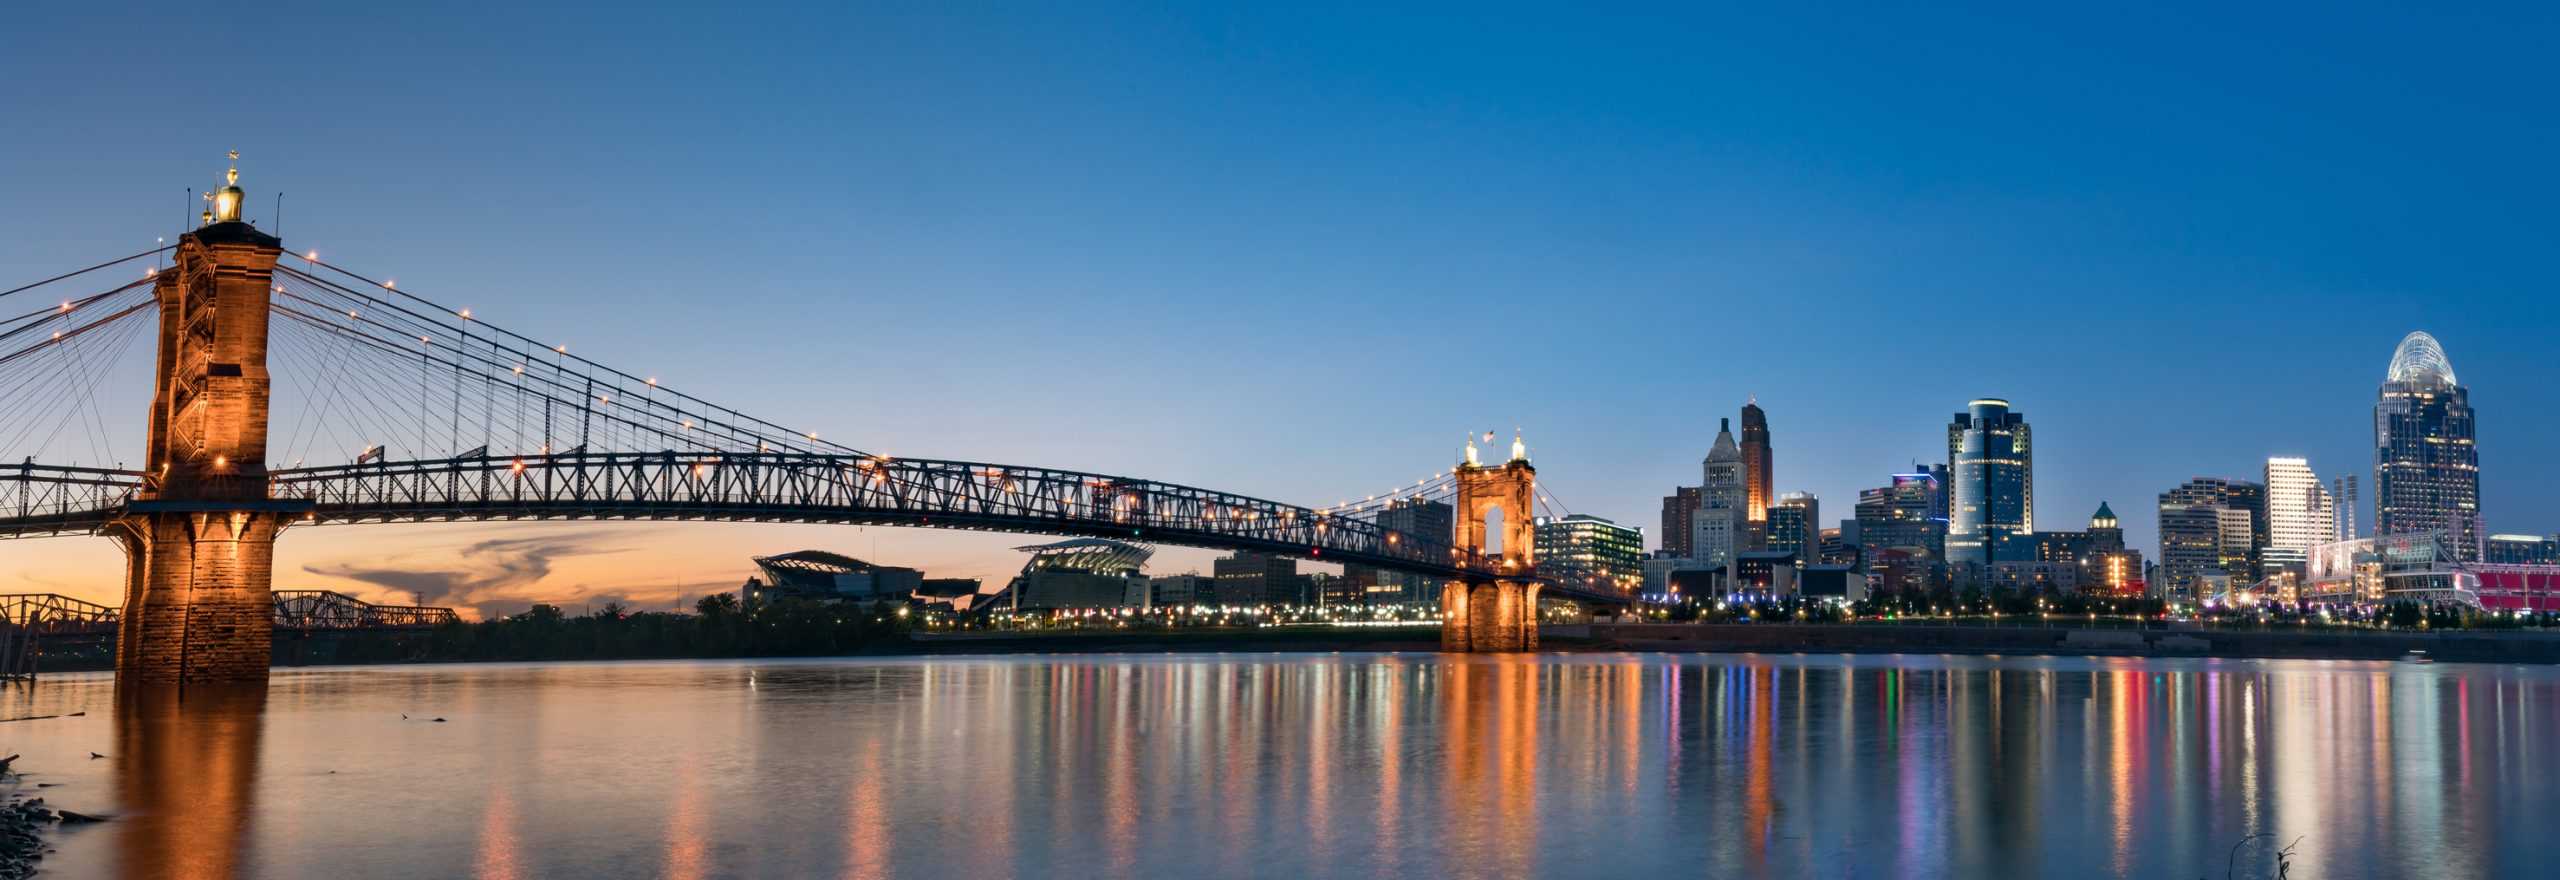 Cincinnati skyline from across the Ohio River.